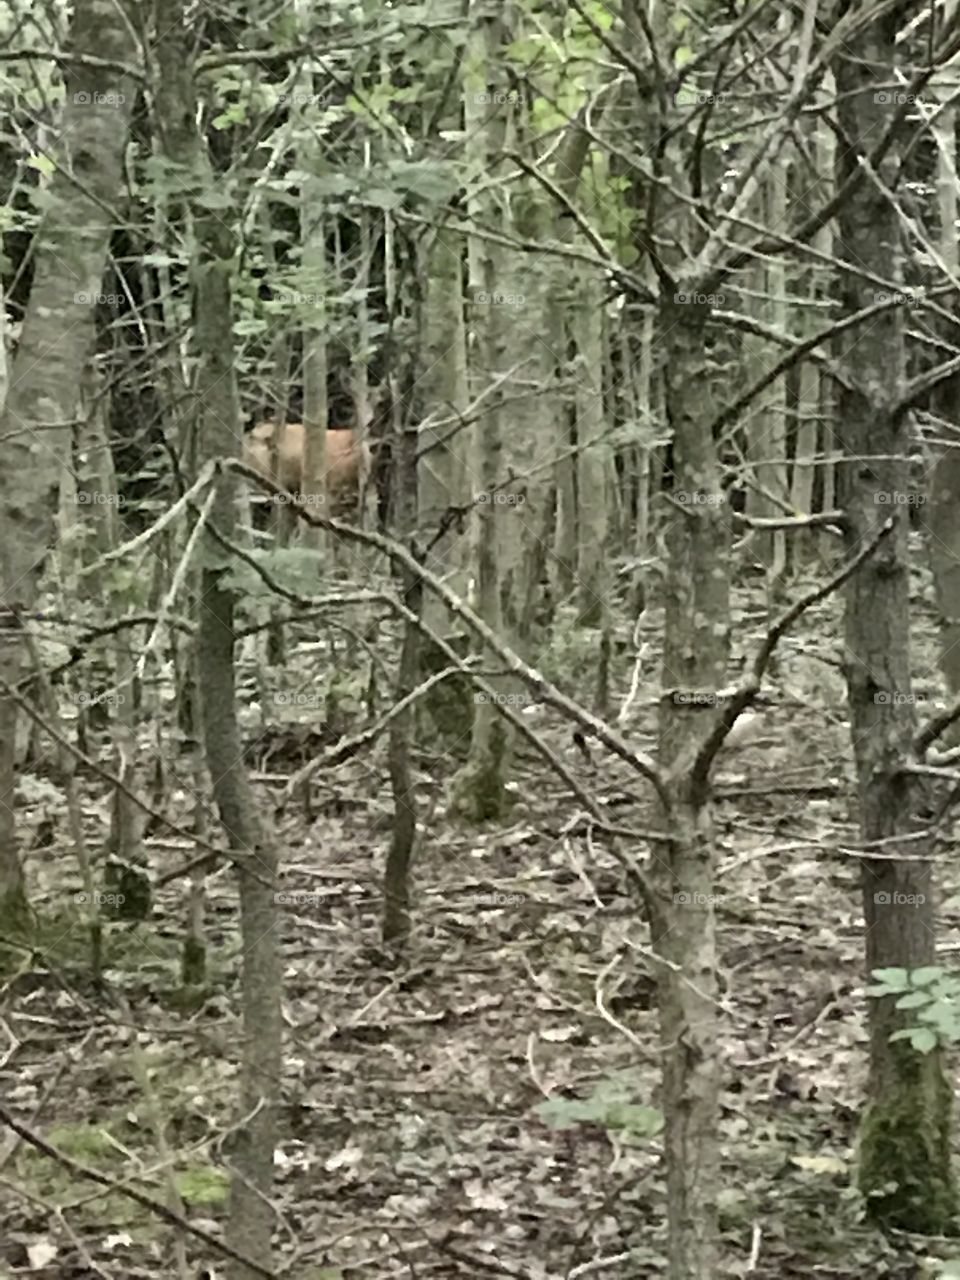 Deer
Wood
Hide and seek
Look at me
